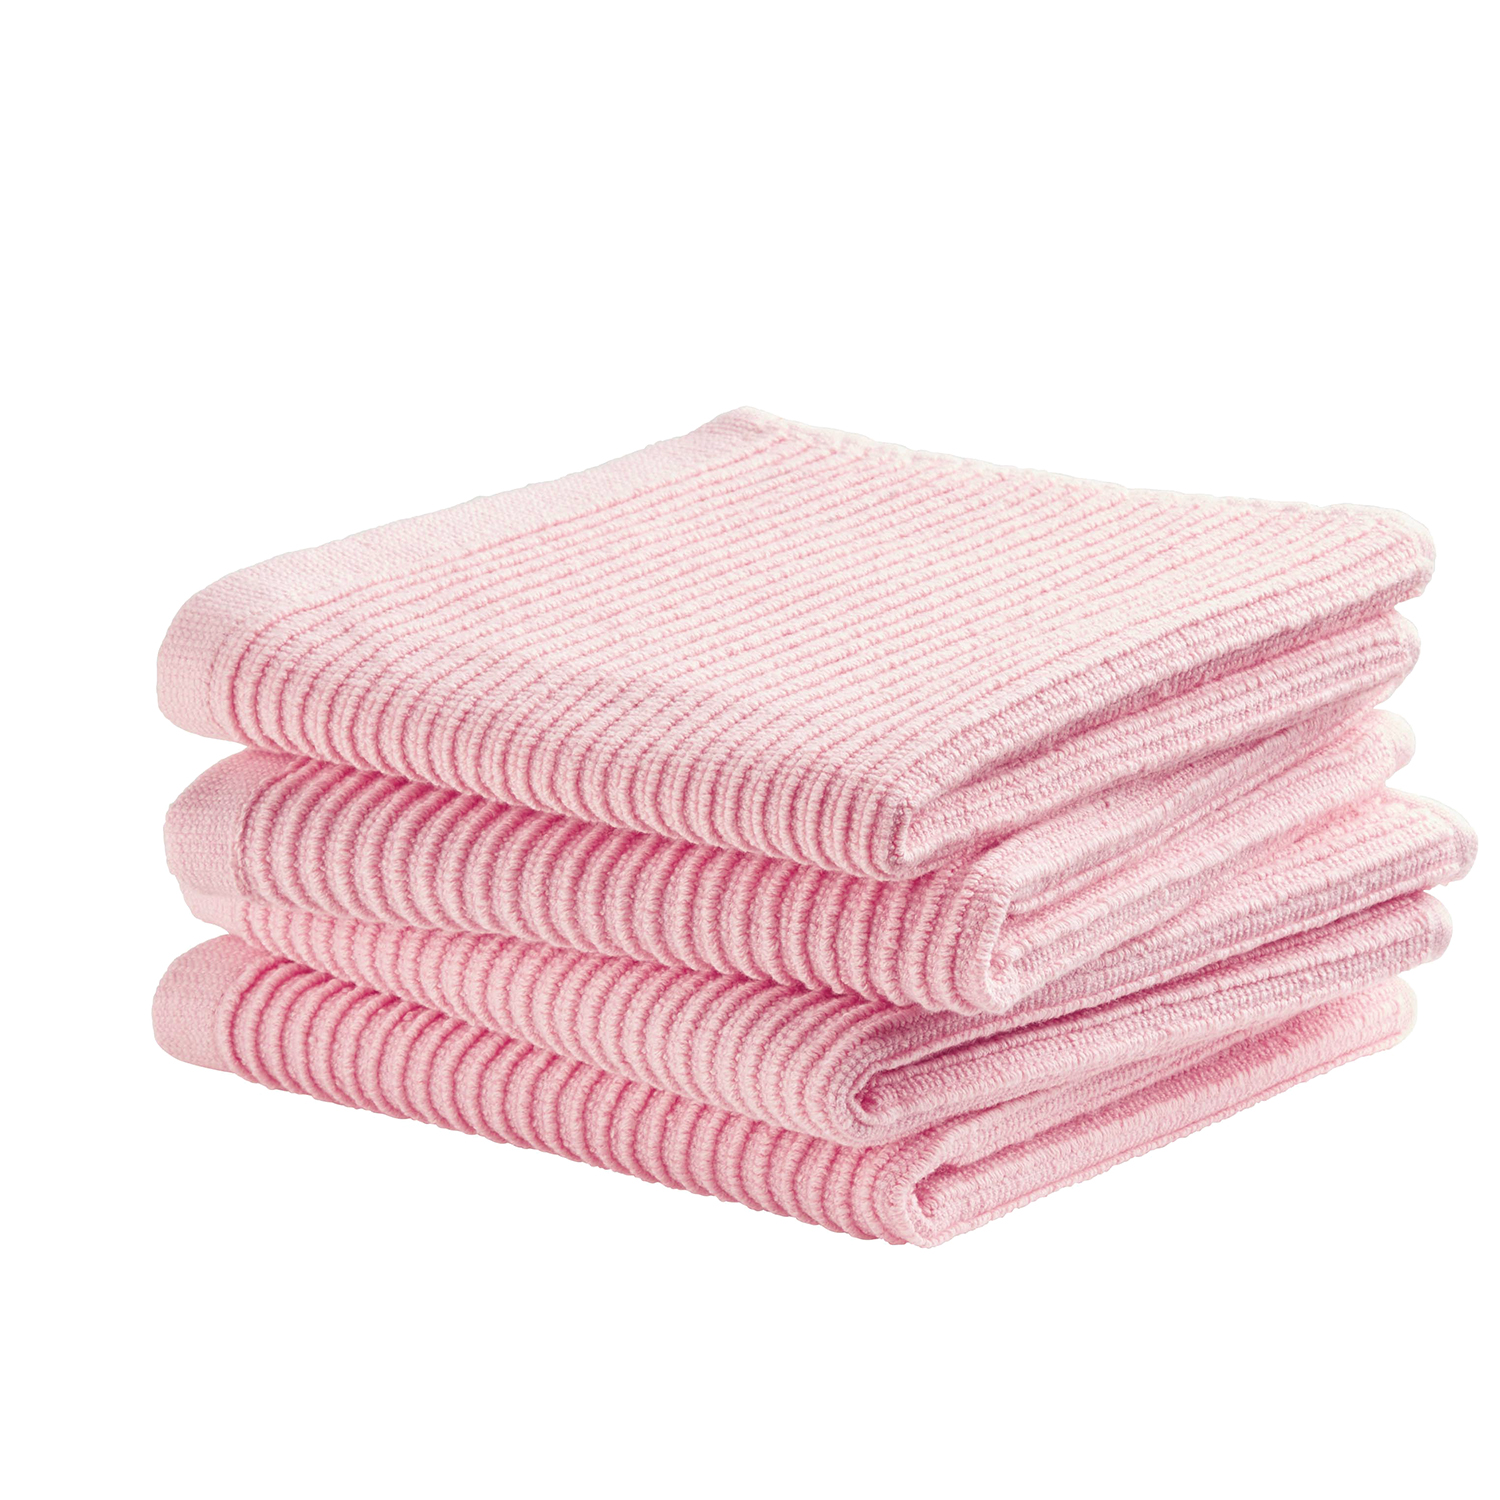 Vaatdoek Basic Clean | Pastel pink | 30 x 30 cm